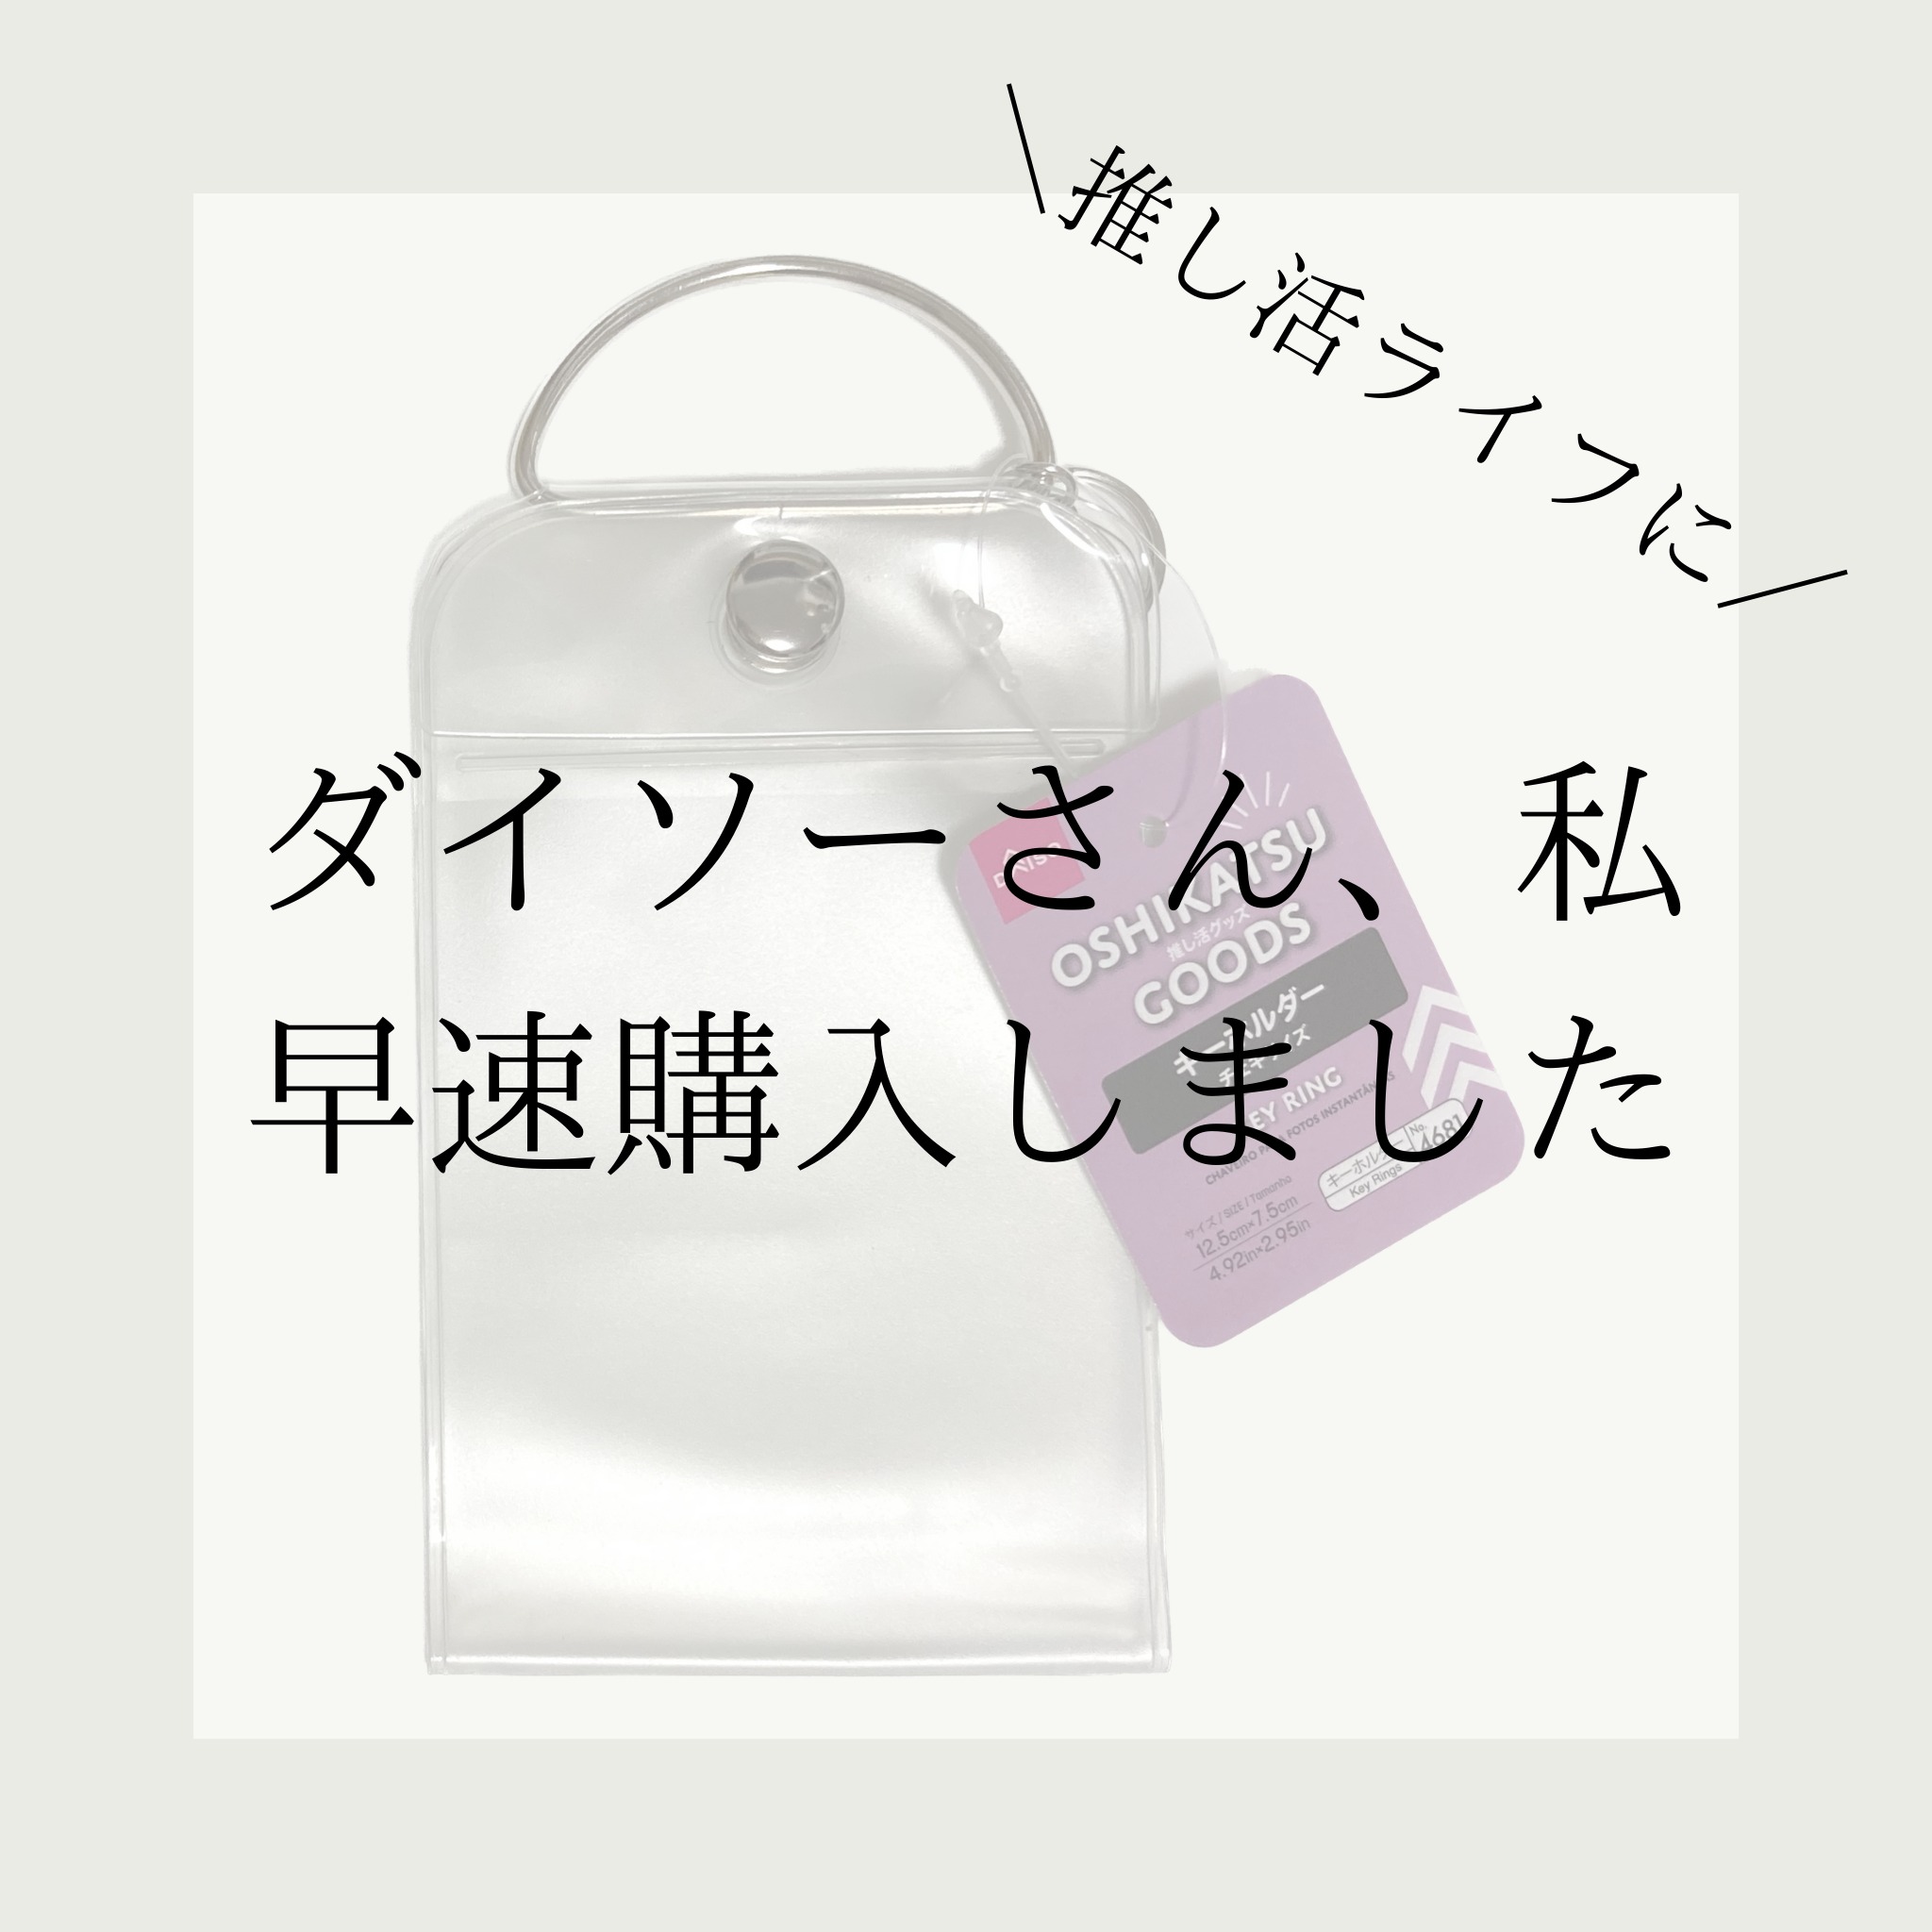 DAISO 【推し活】OSHIKASTU GOODS キーホルダー チェキサイズ